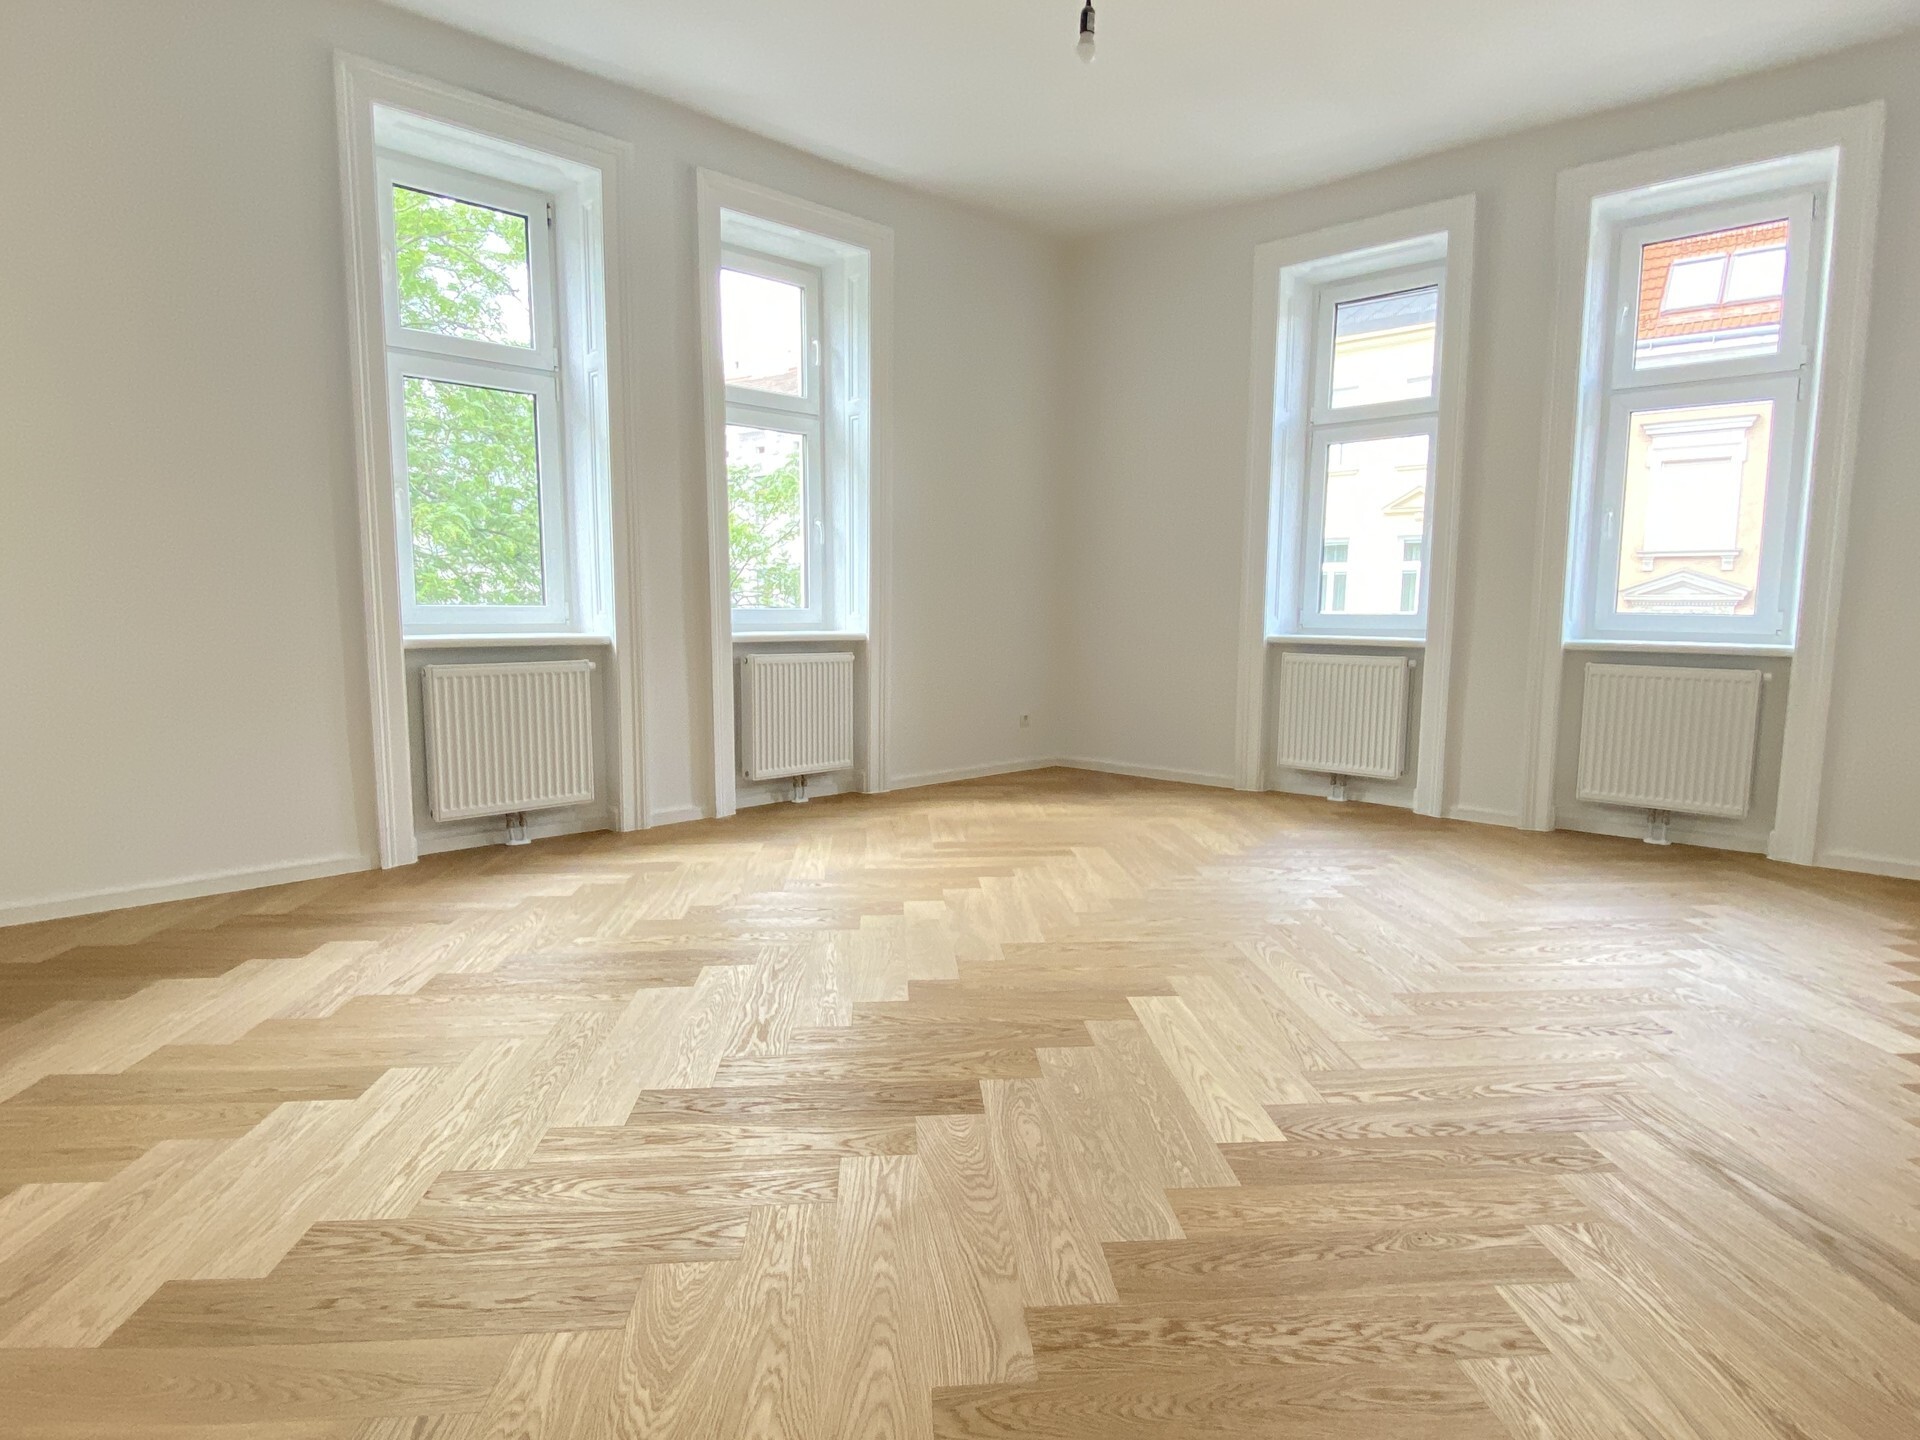 Stillvoll renovierte 2-Zimmer Altbauwohnung mit modernem Bad und Küche - zu kaufen in 1150 Wien